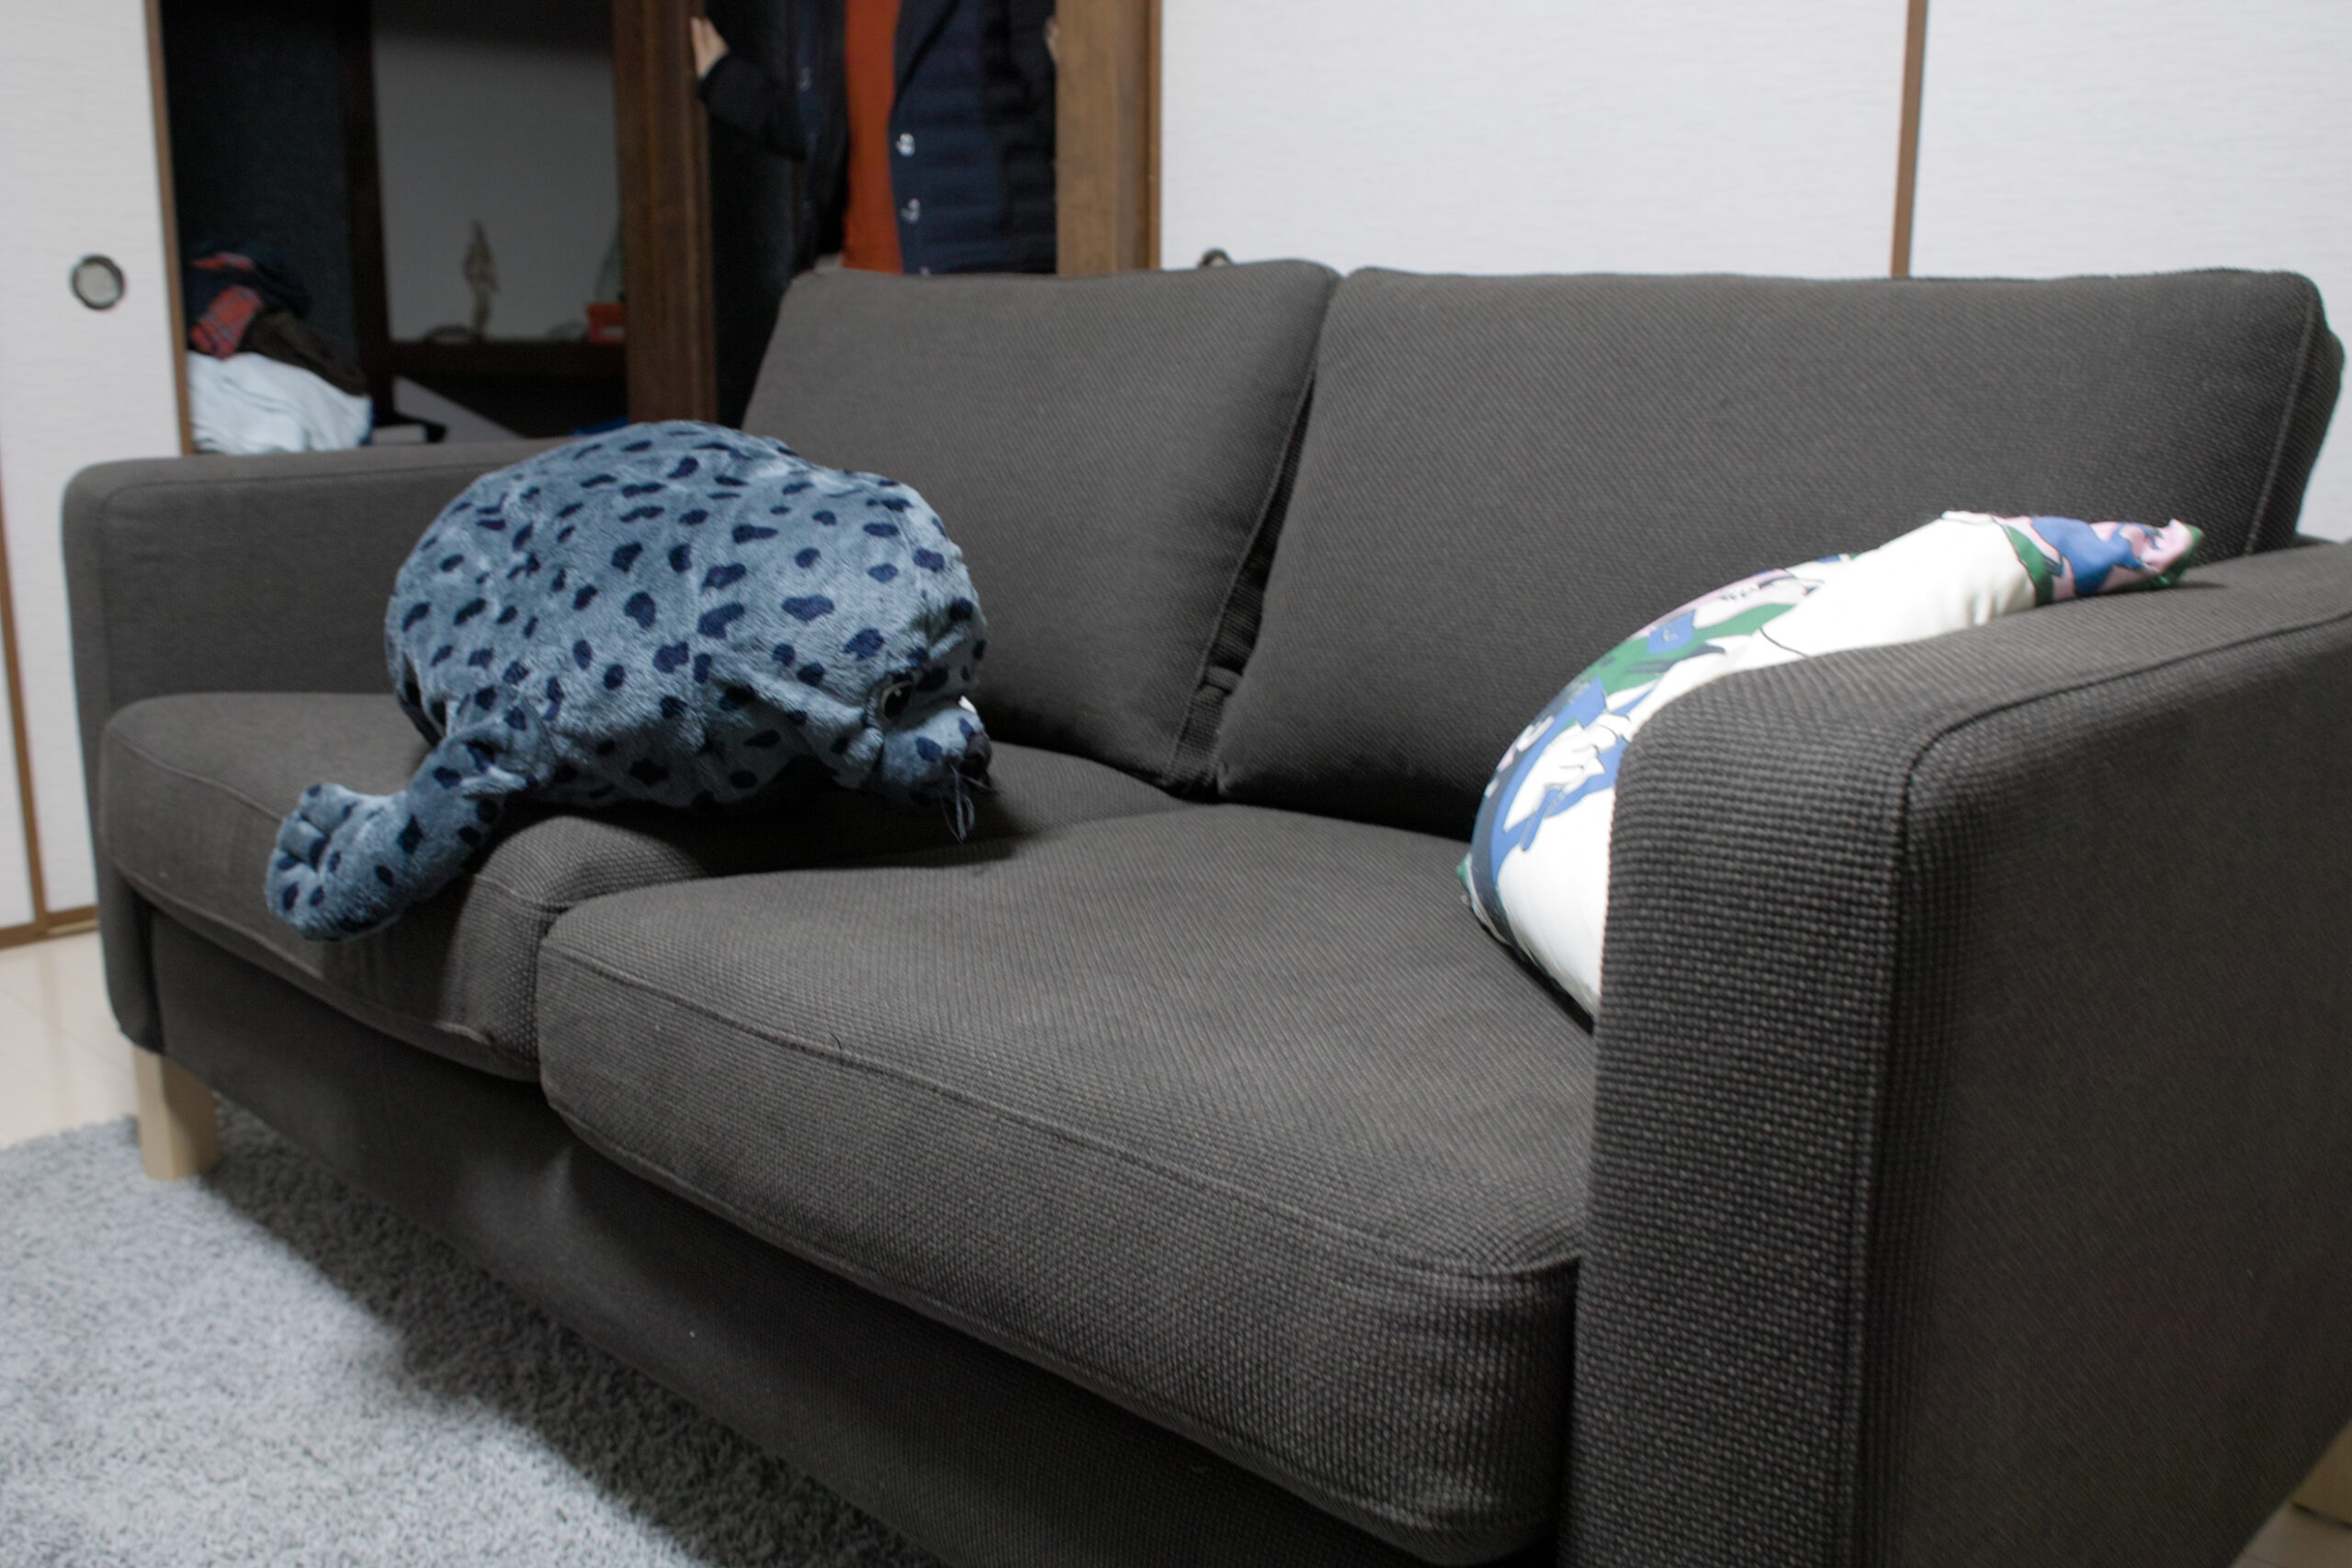 IKEAから買ったソファ是非宜しくお願い致します